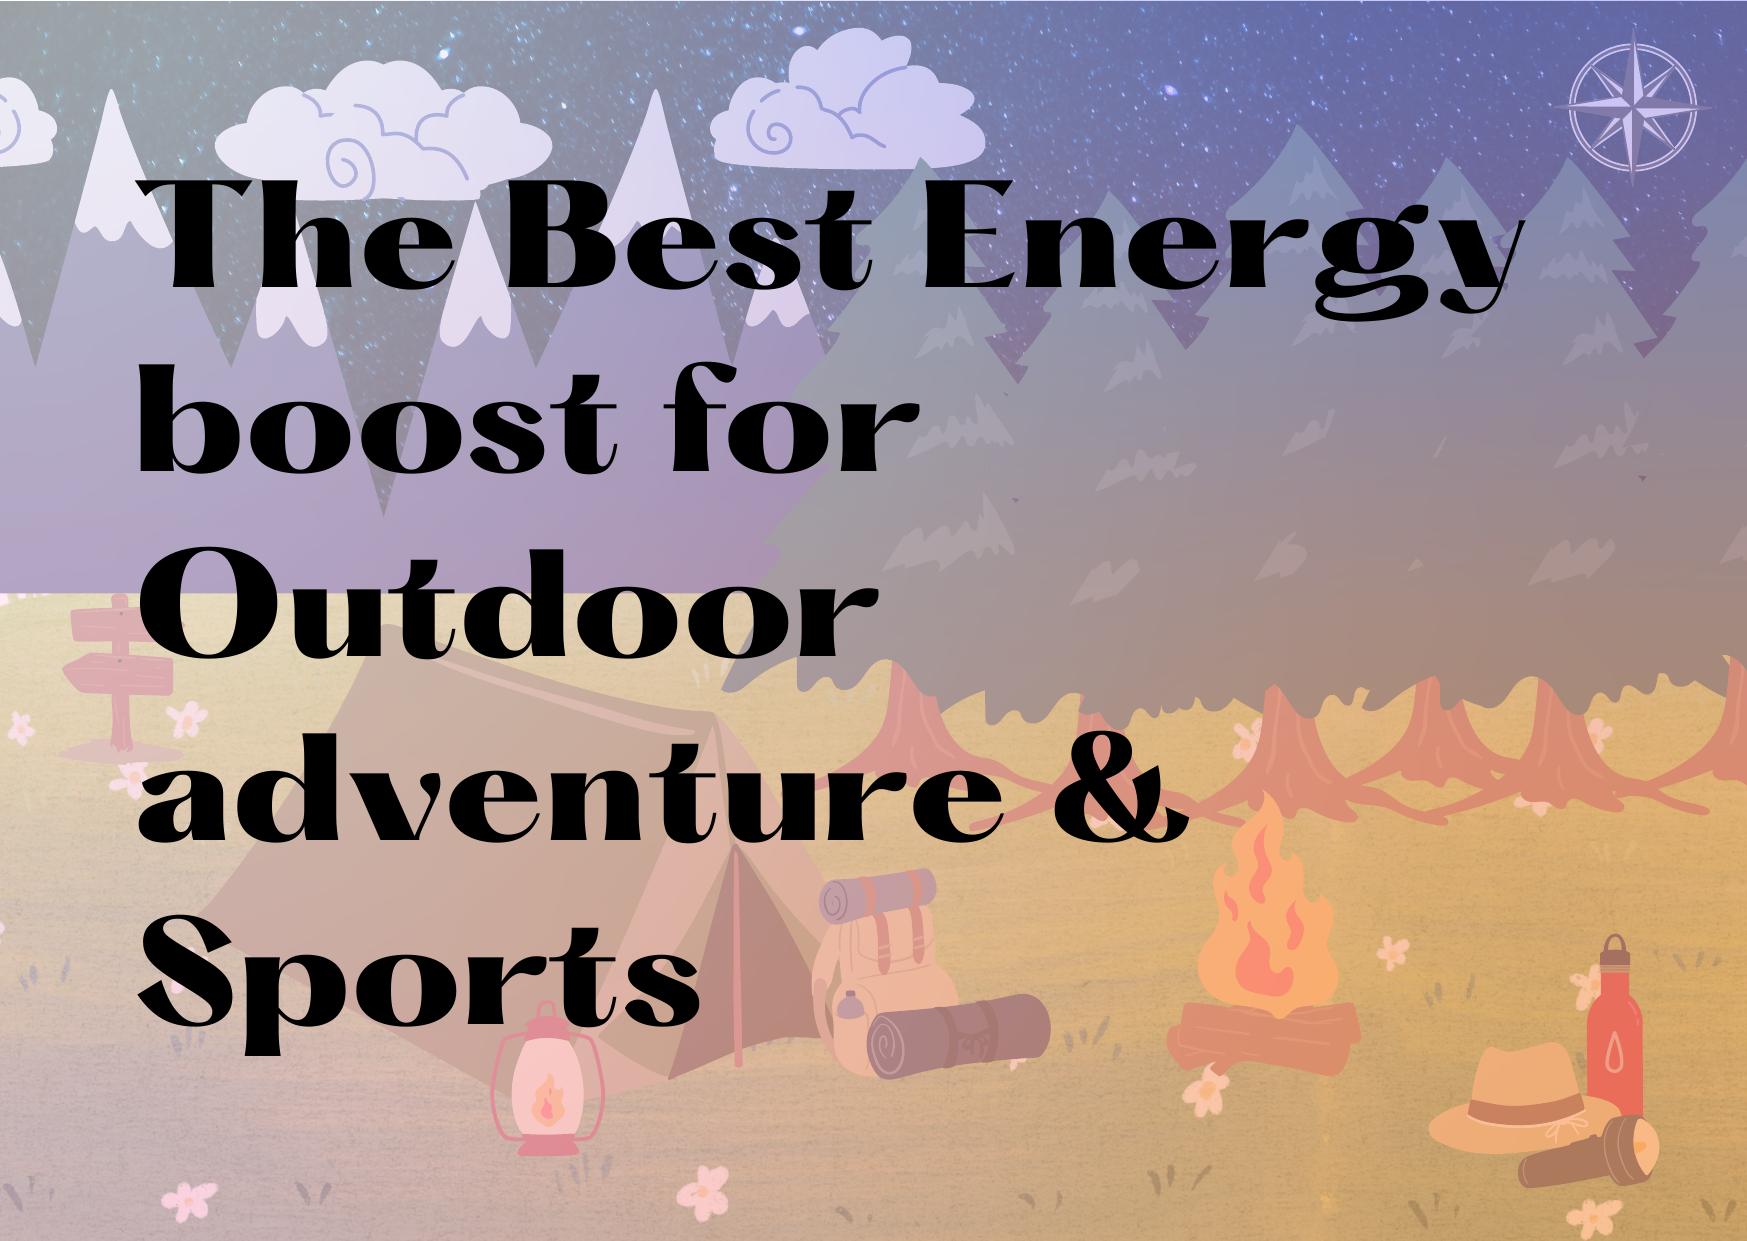 Boost energy for outdoor activities